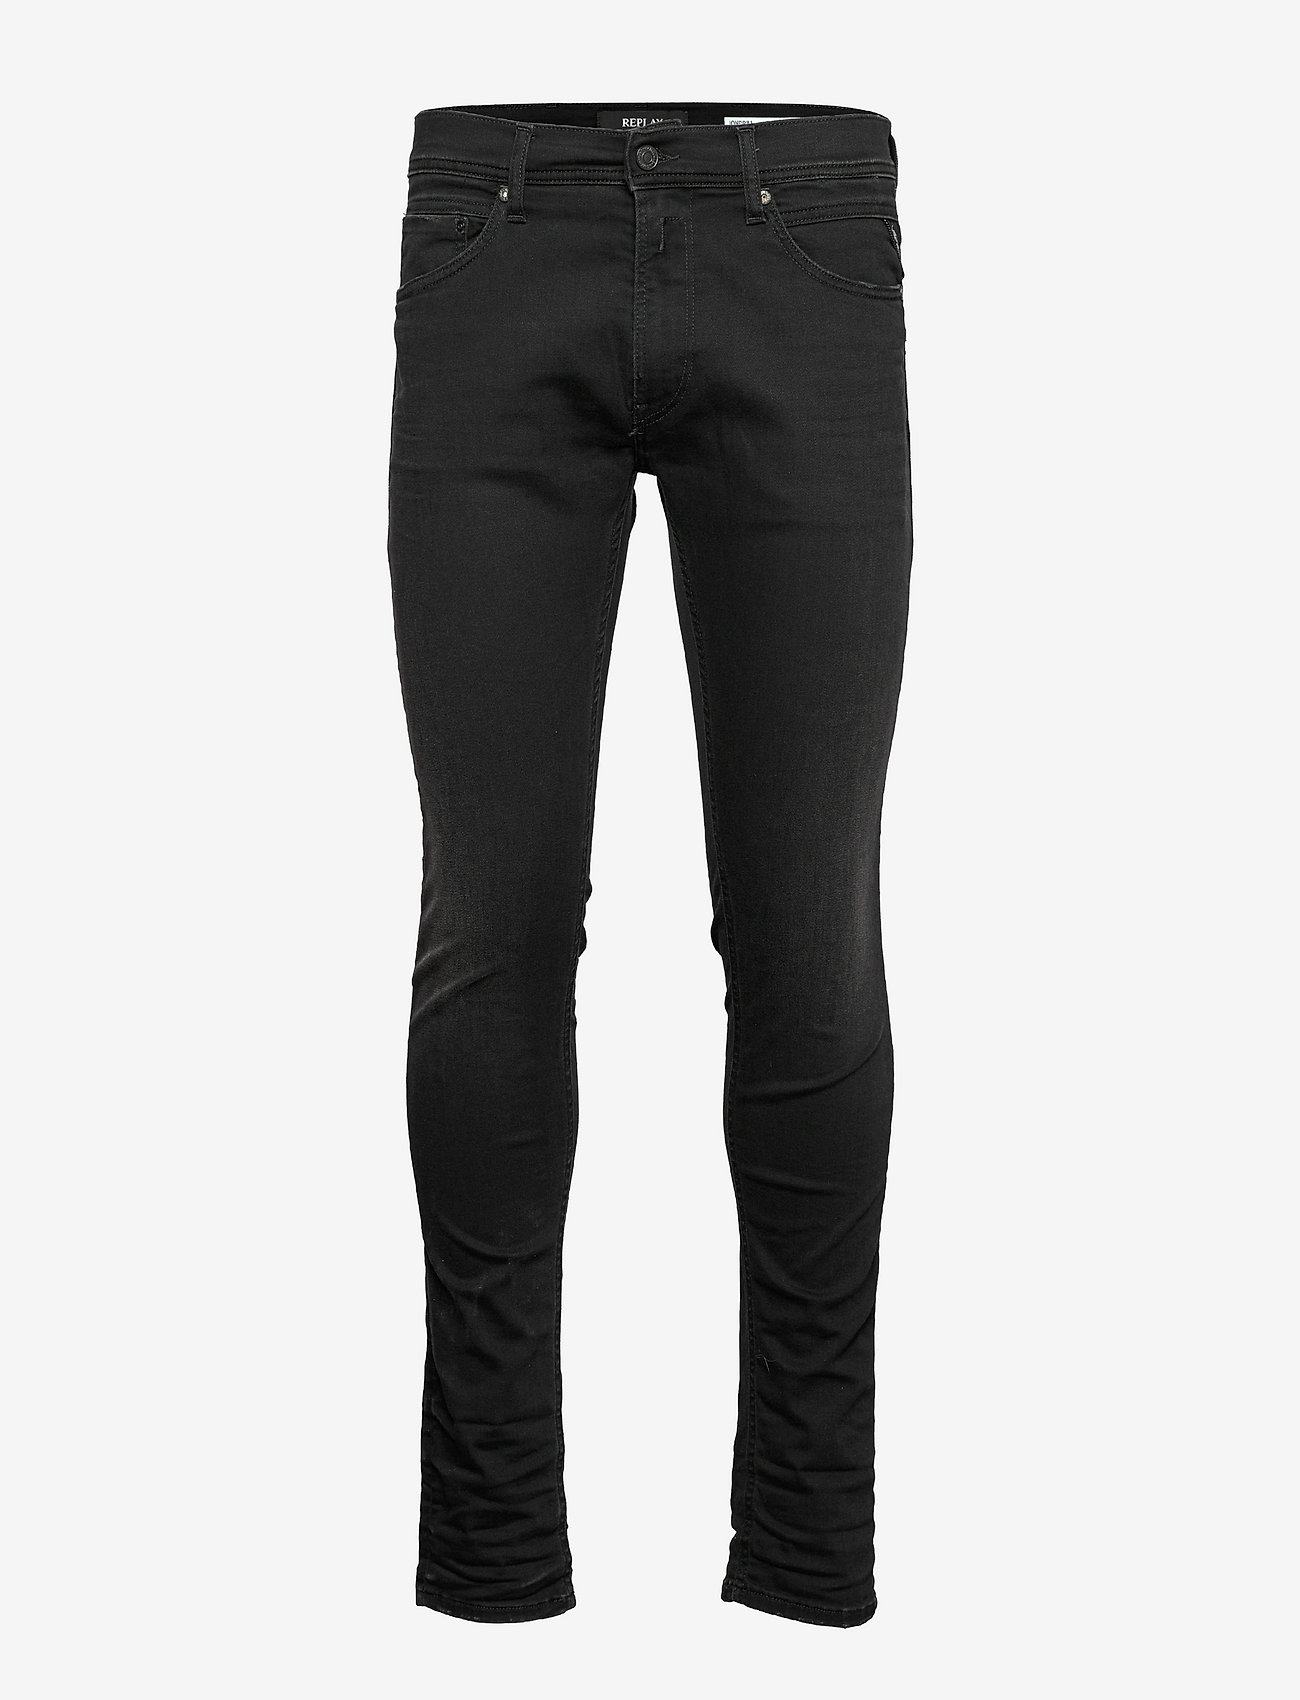 Replay Jondrill Trousers X-lite - Skinny jeans | Boozt.com